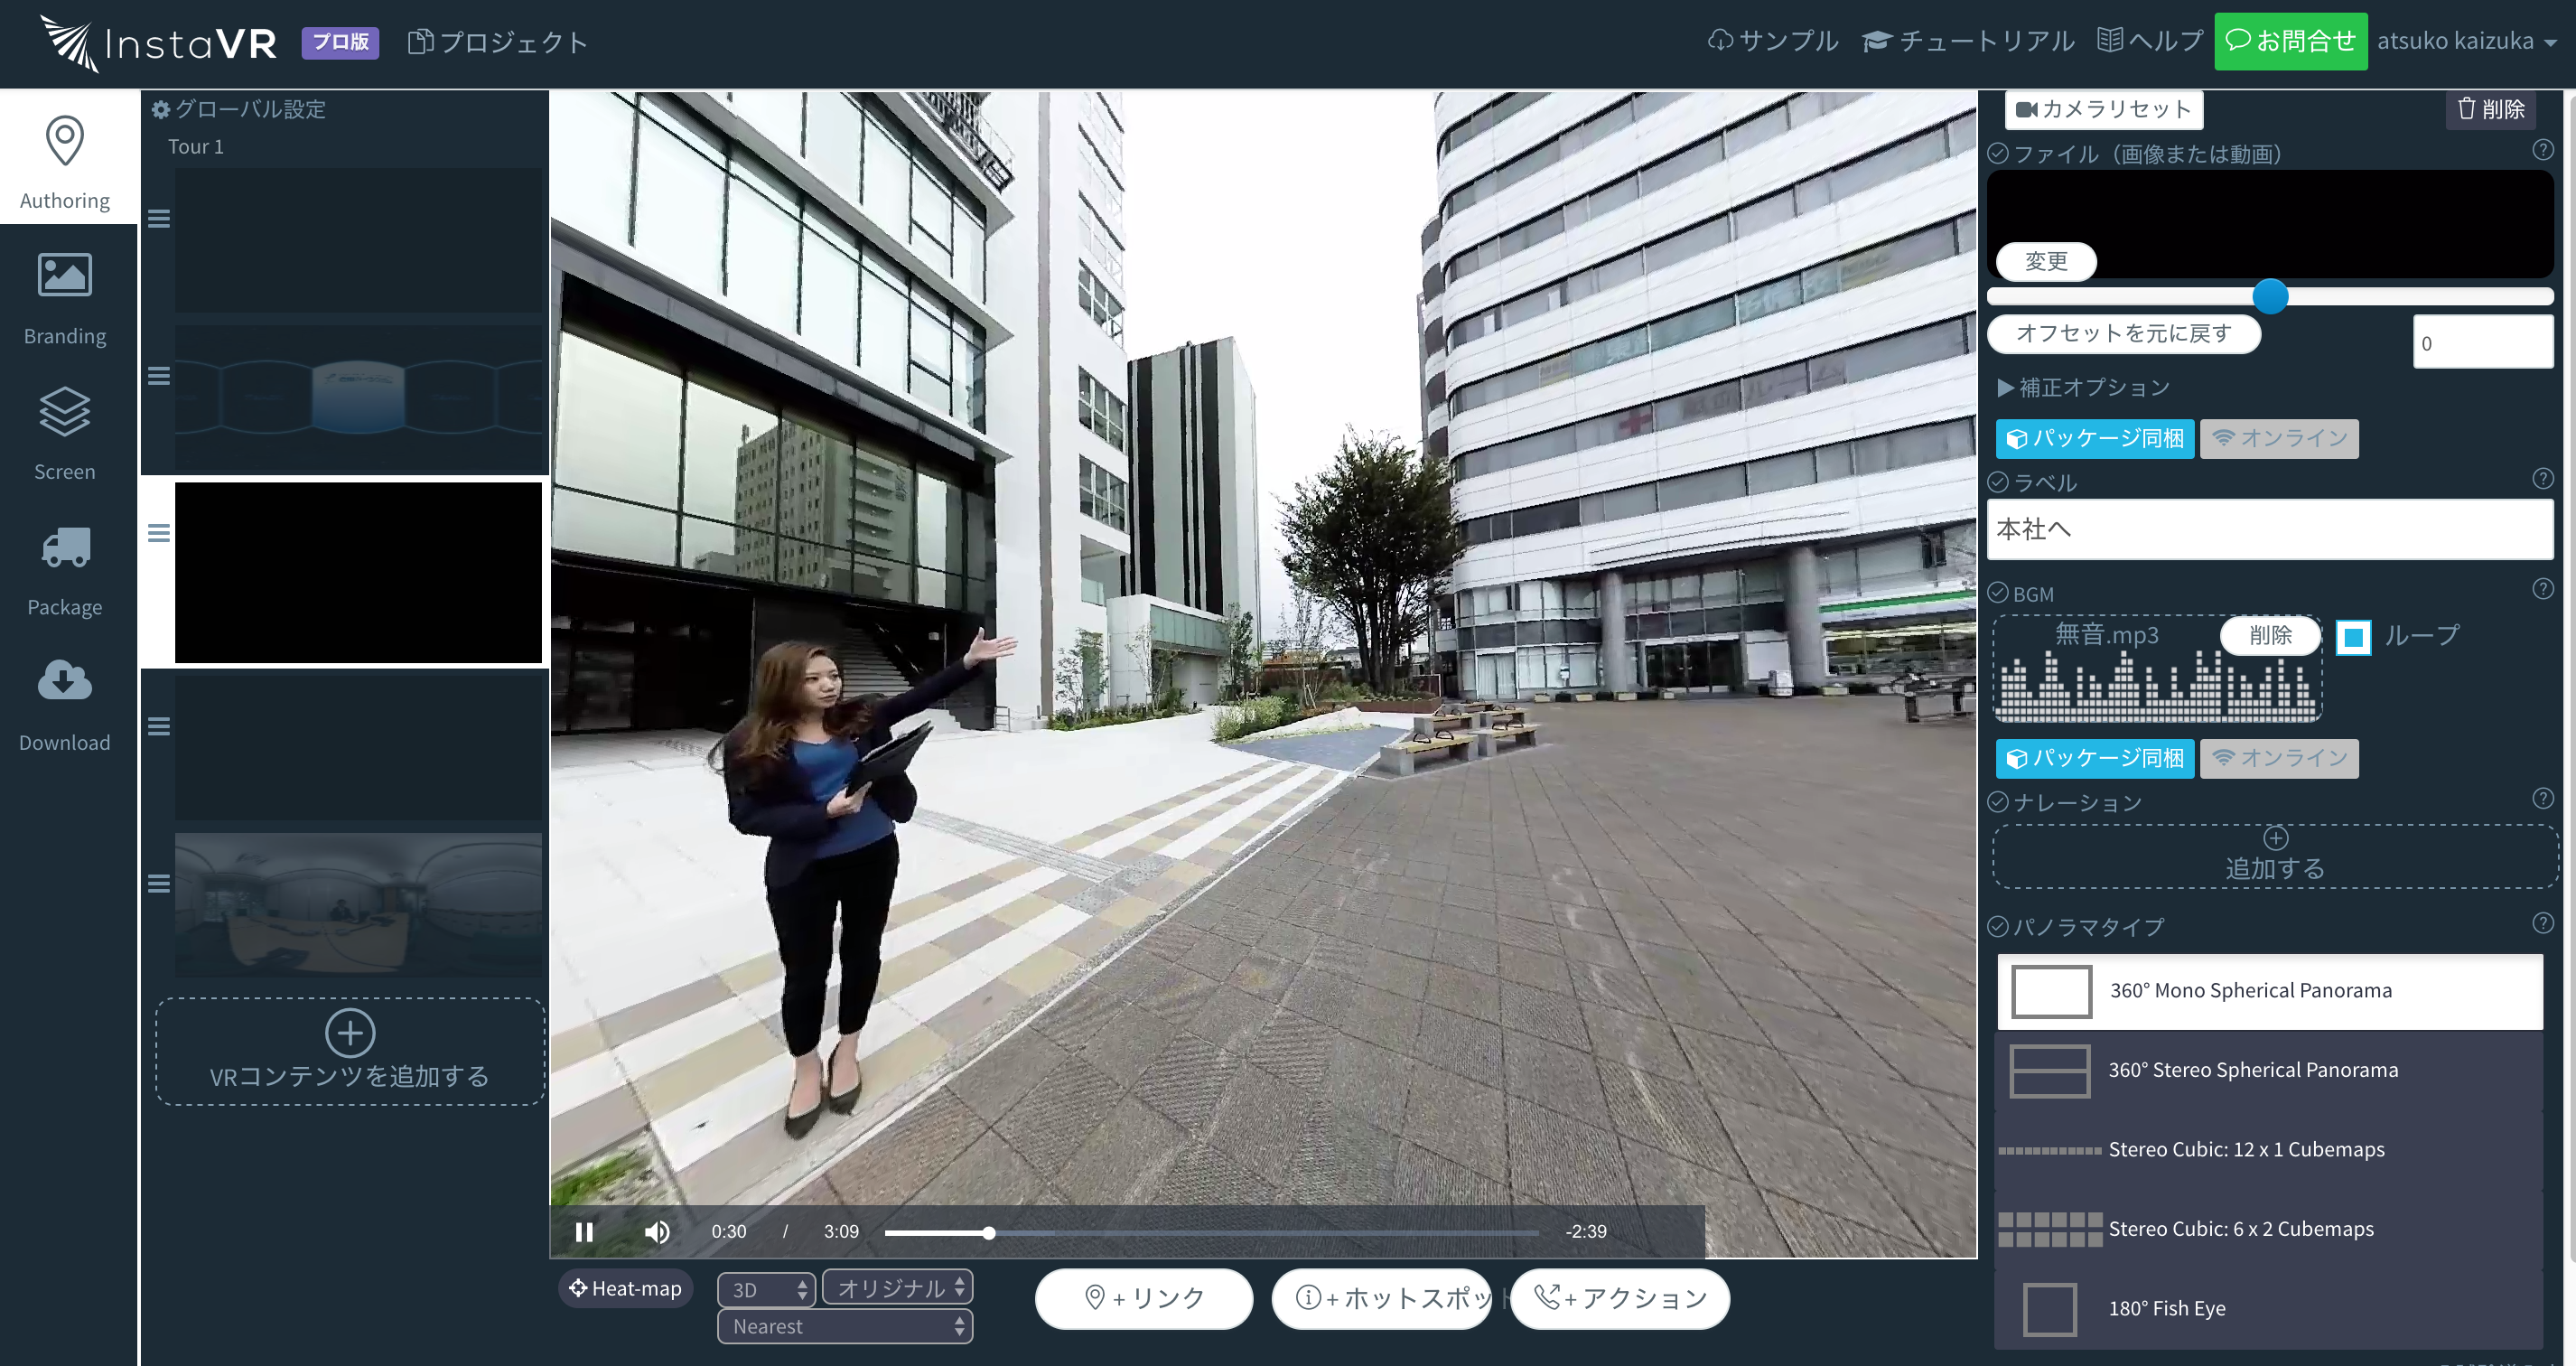 豊田ハイシステム株式会社のVR事業所紹介コンテンツInstaVR上のオーサリング画面。360 VR動画をブラウザ上で滑らかに再生させながら直感的に編集、ワンクリックでHTC Viveに出力できる